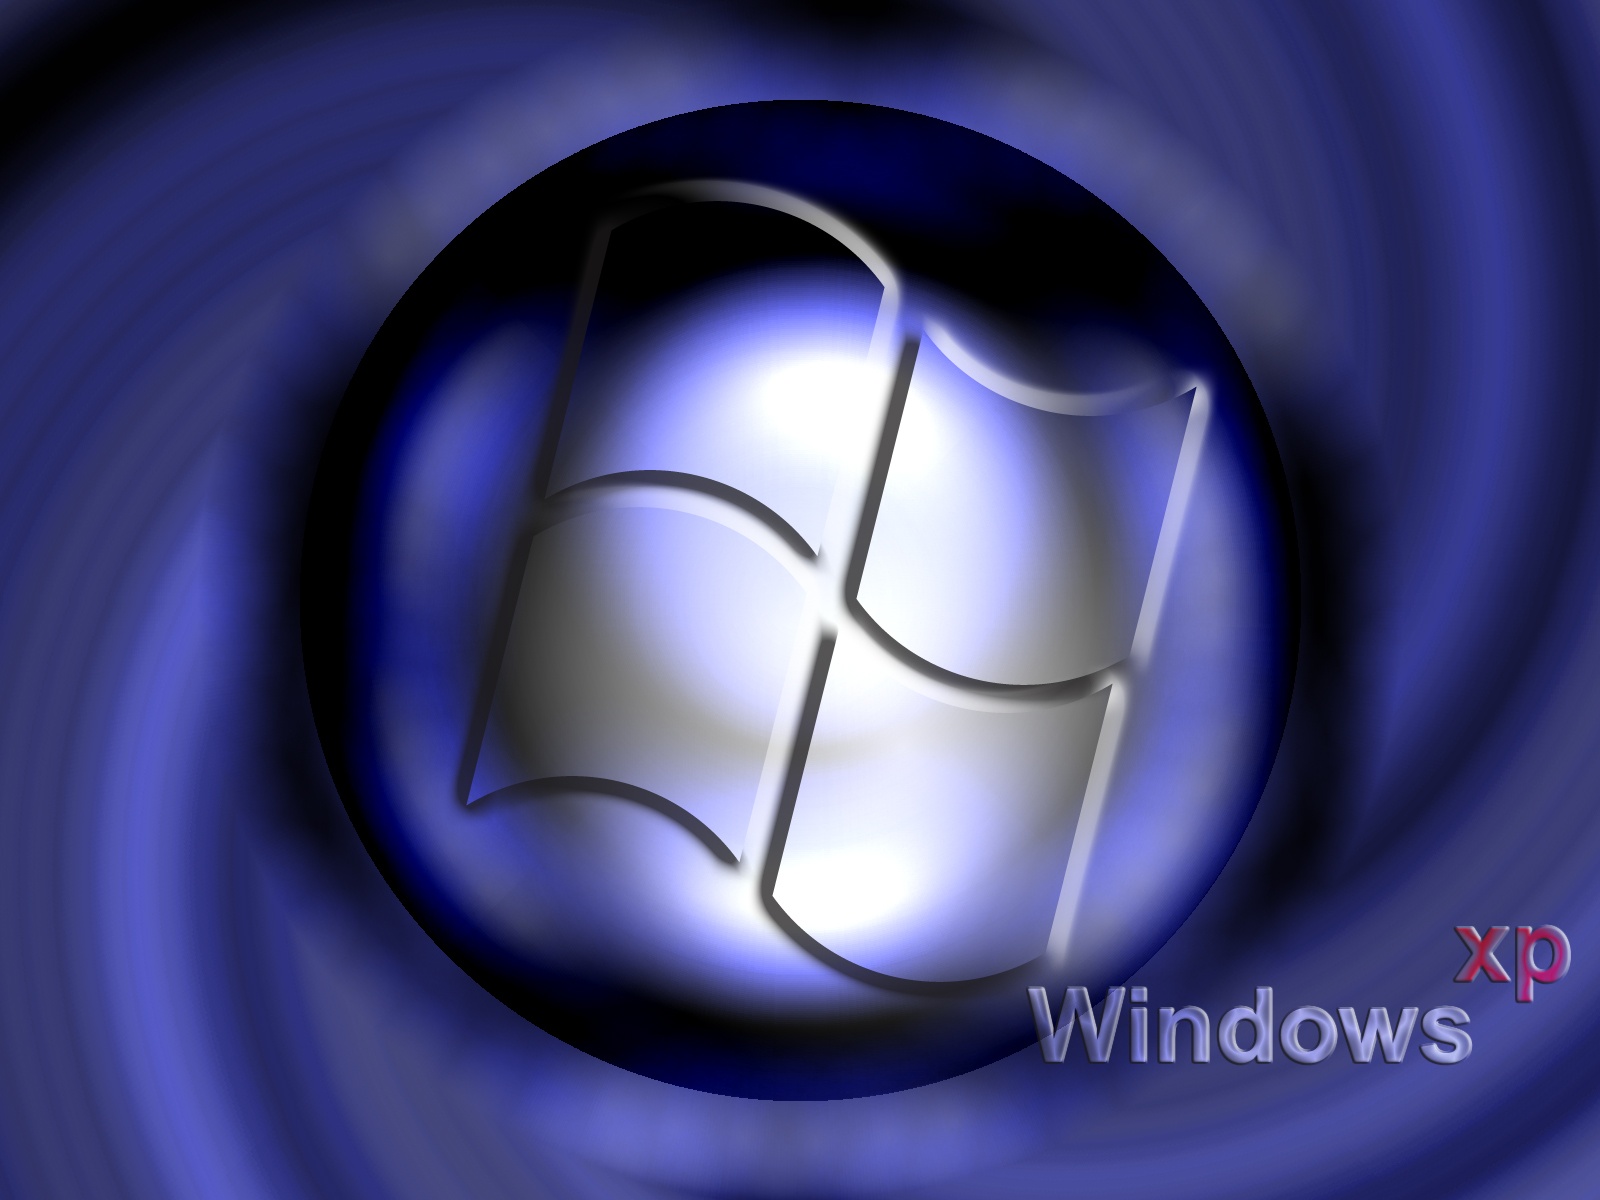 Ver Imagenes De Windows , HD Wallpaper & Backgrounds